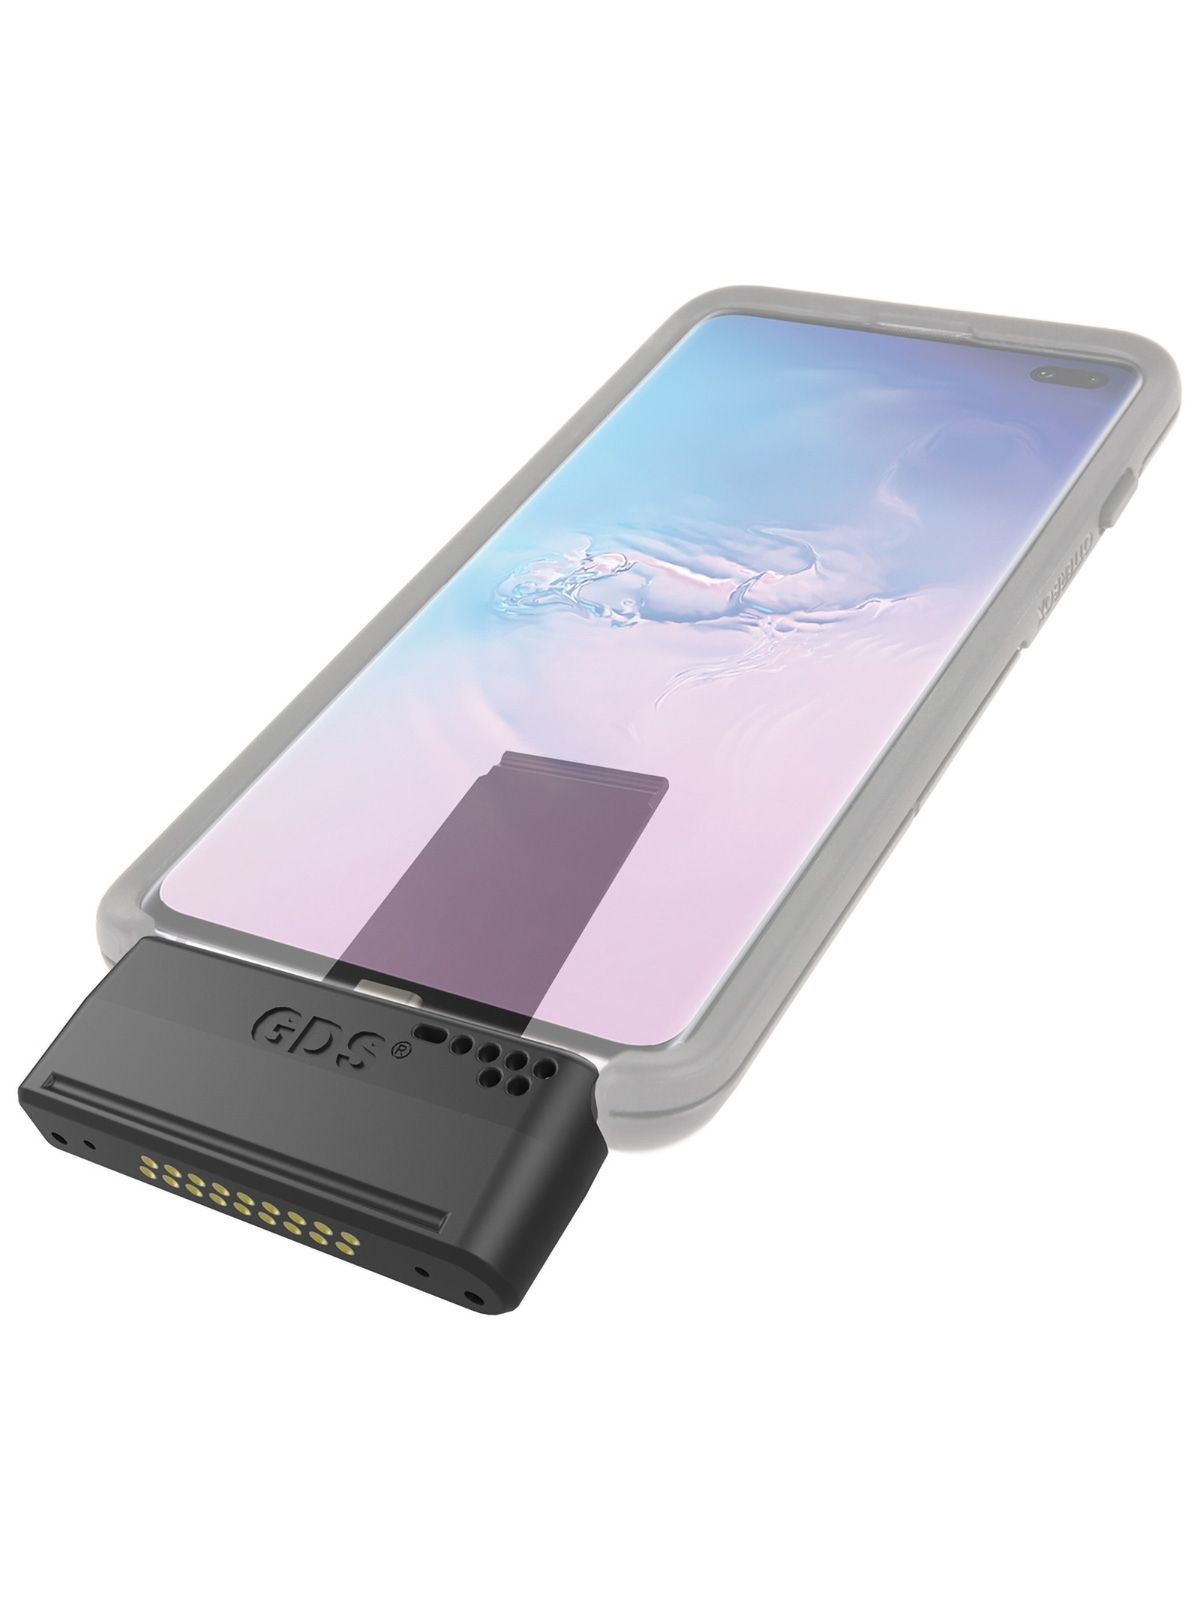 RAM Mounts GDS-Modul für Samsung S9 / S10 / S10e in Otterbox uniVERSE Gehäusen - im Polybeutel